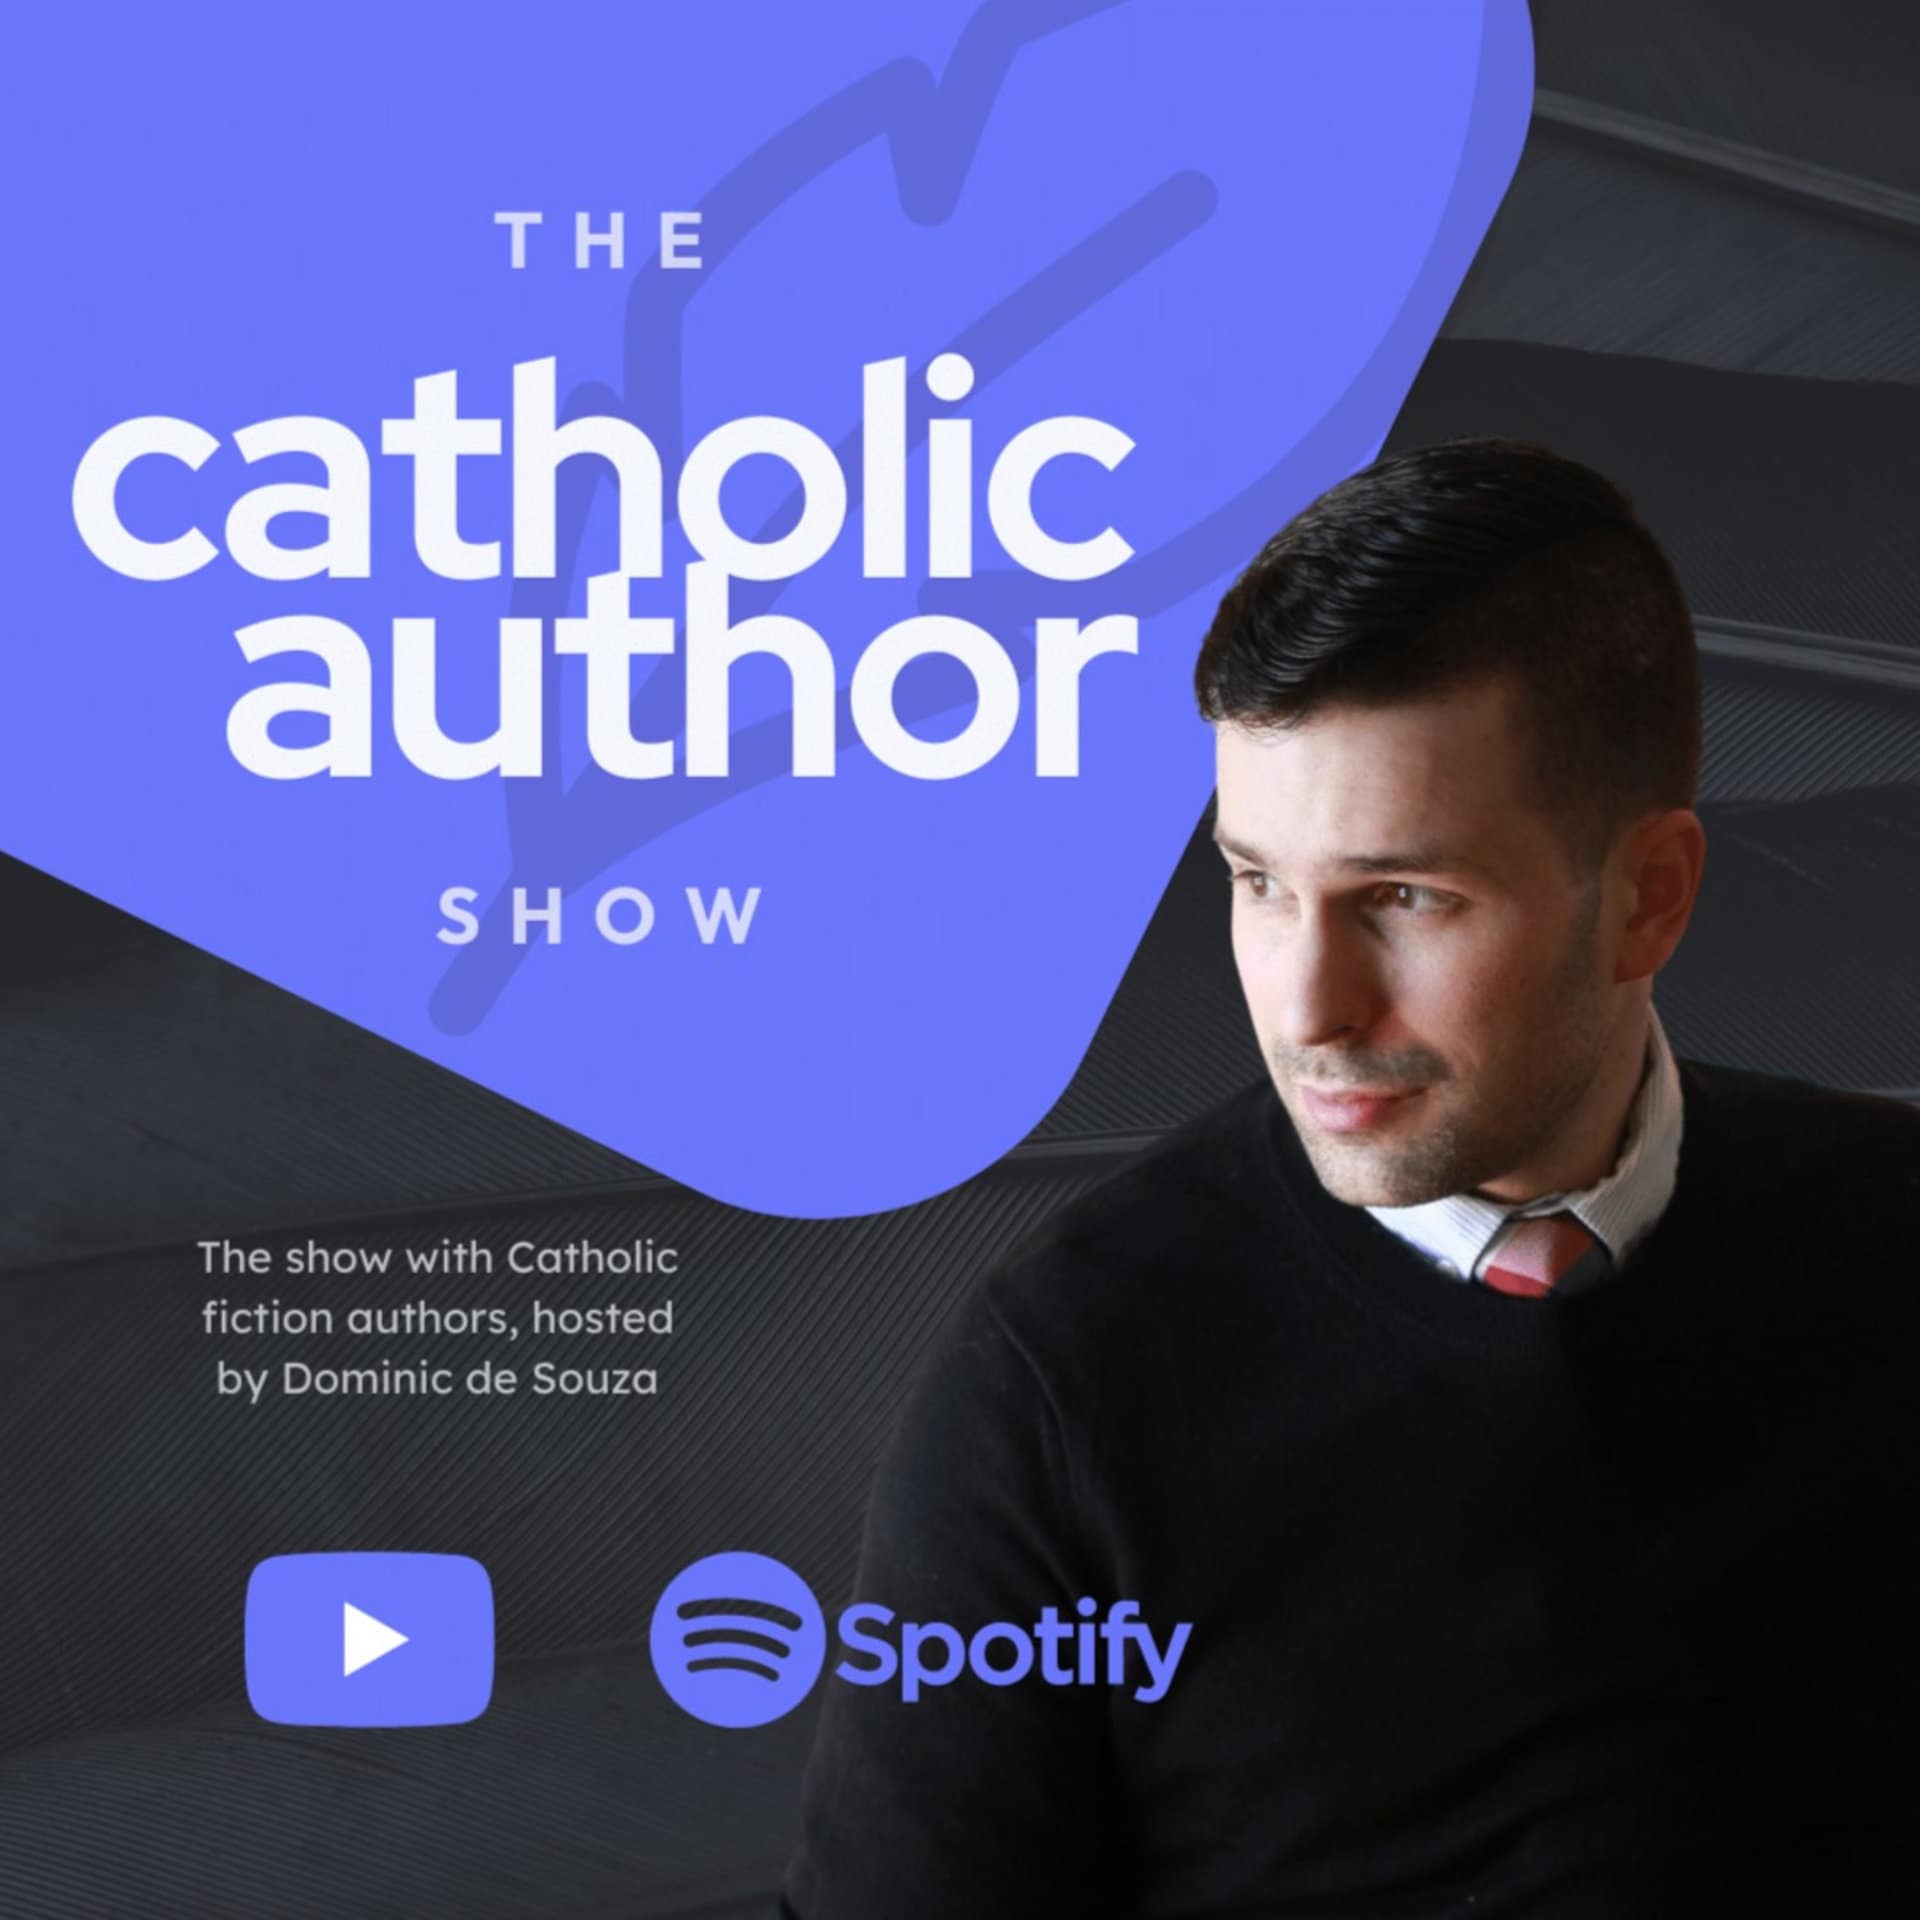 The CatholicAuthor Show